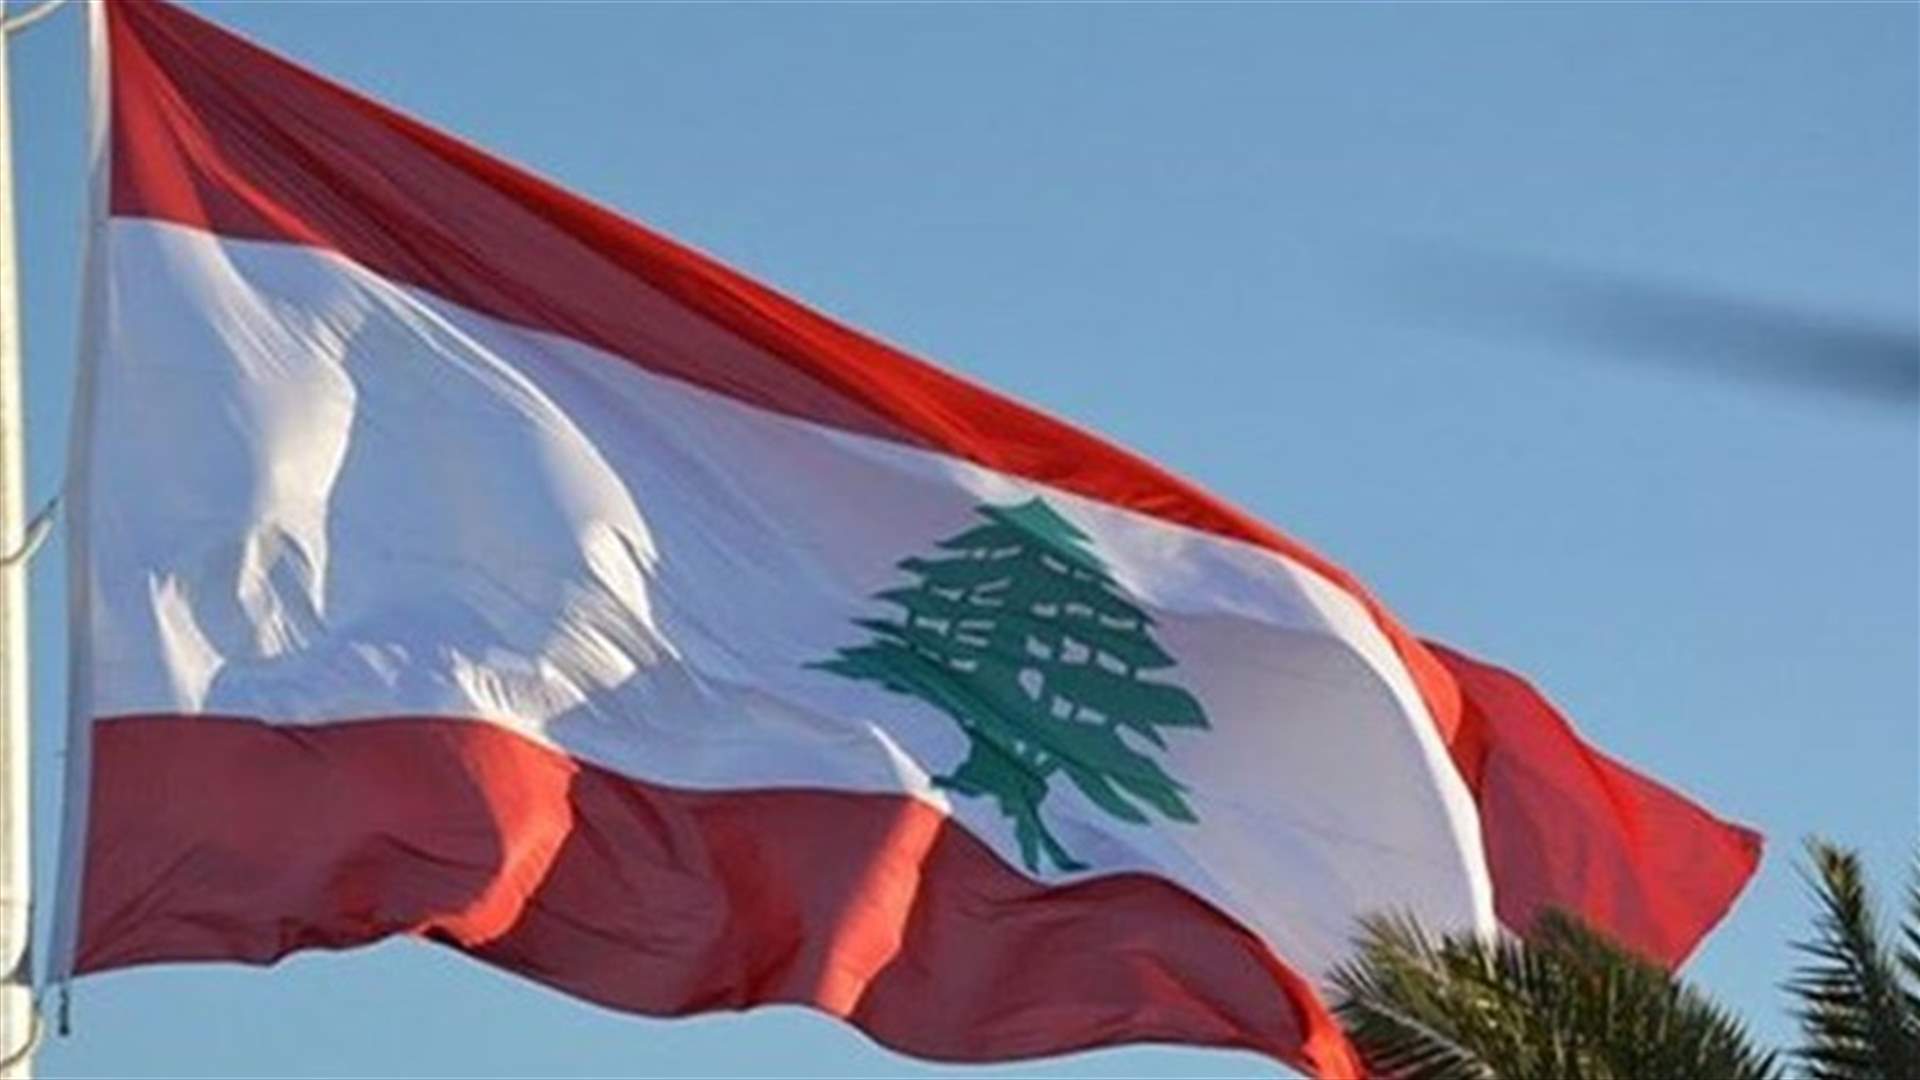 مجموعة الدعم الدوليّة من أجل لبنان: للتحرك سريعا لتشكيل حكومة يمكنها تنفيذ الإصلاحات